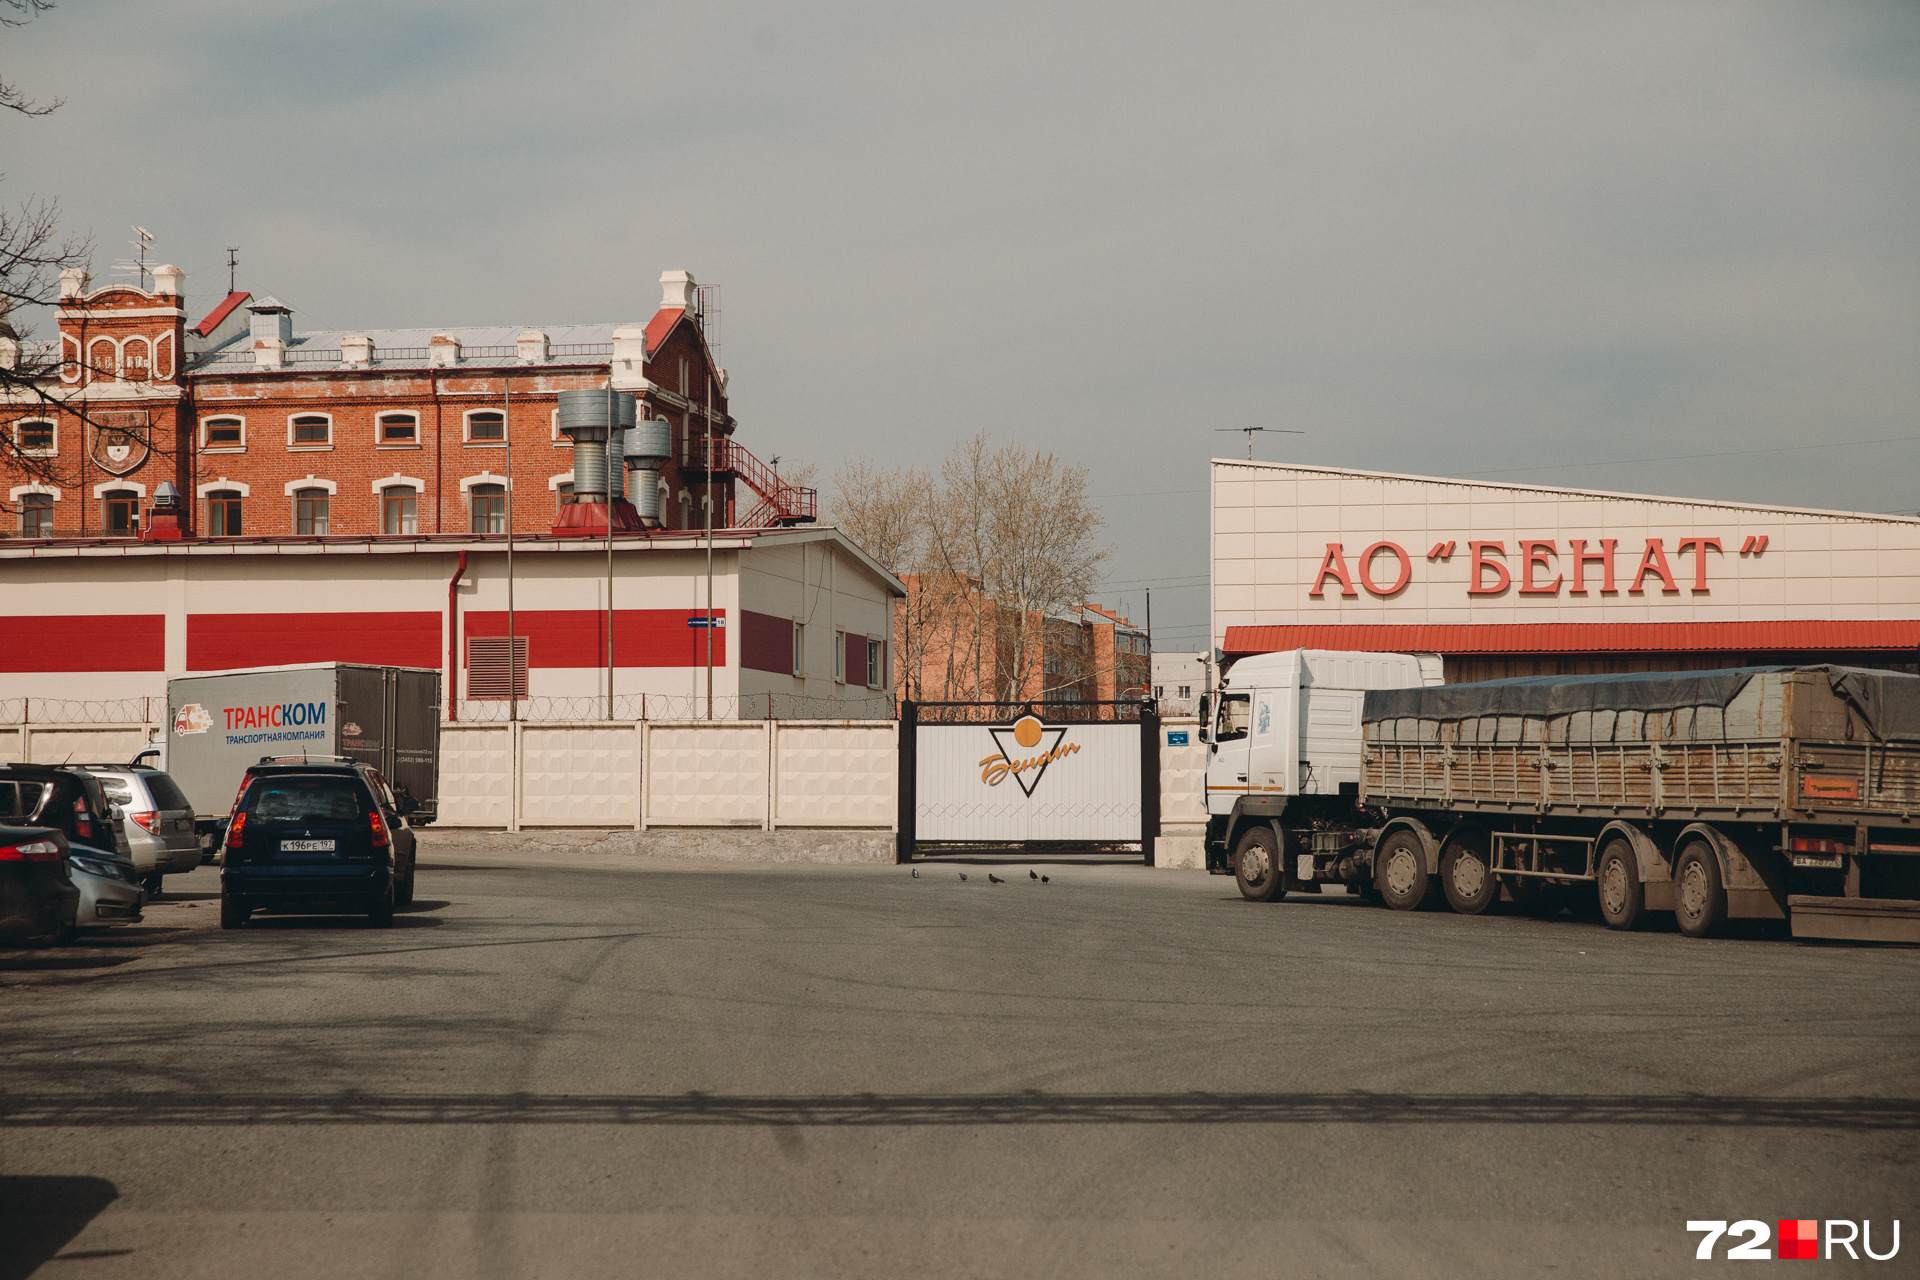 Территория завода «Бенат» закрыта от посторонних. Здесь производят алкогольную продукцию